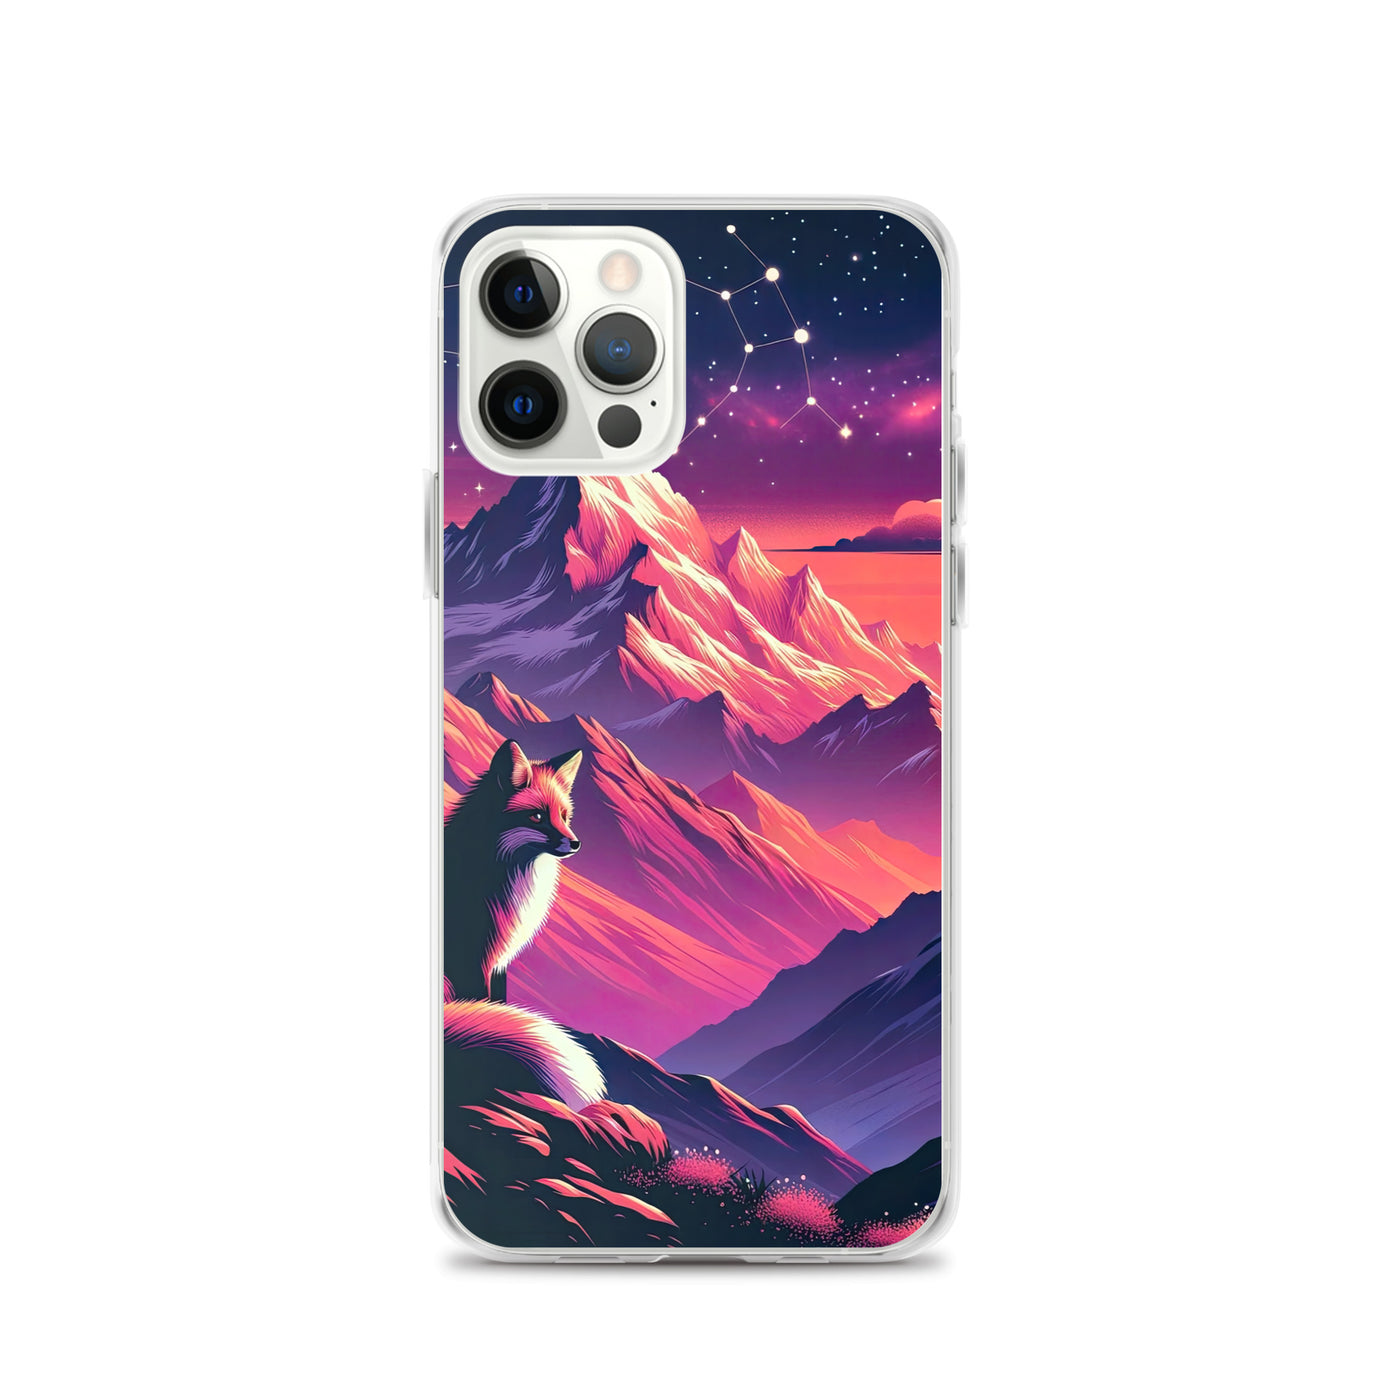 Fuchs im dramatischen Sonnenuntergang: Digitale Bergillustration in Abendfarben - iPhone Schutzhülle (durchsichtig) camping xxx yyy zzz iPhone 12 Pro